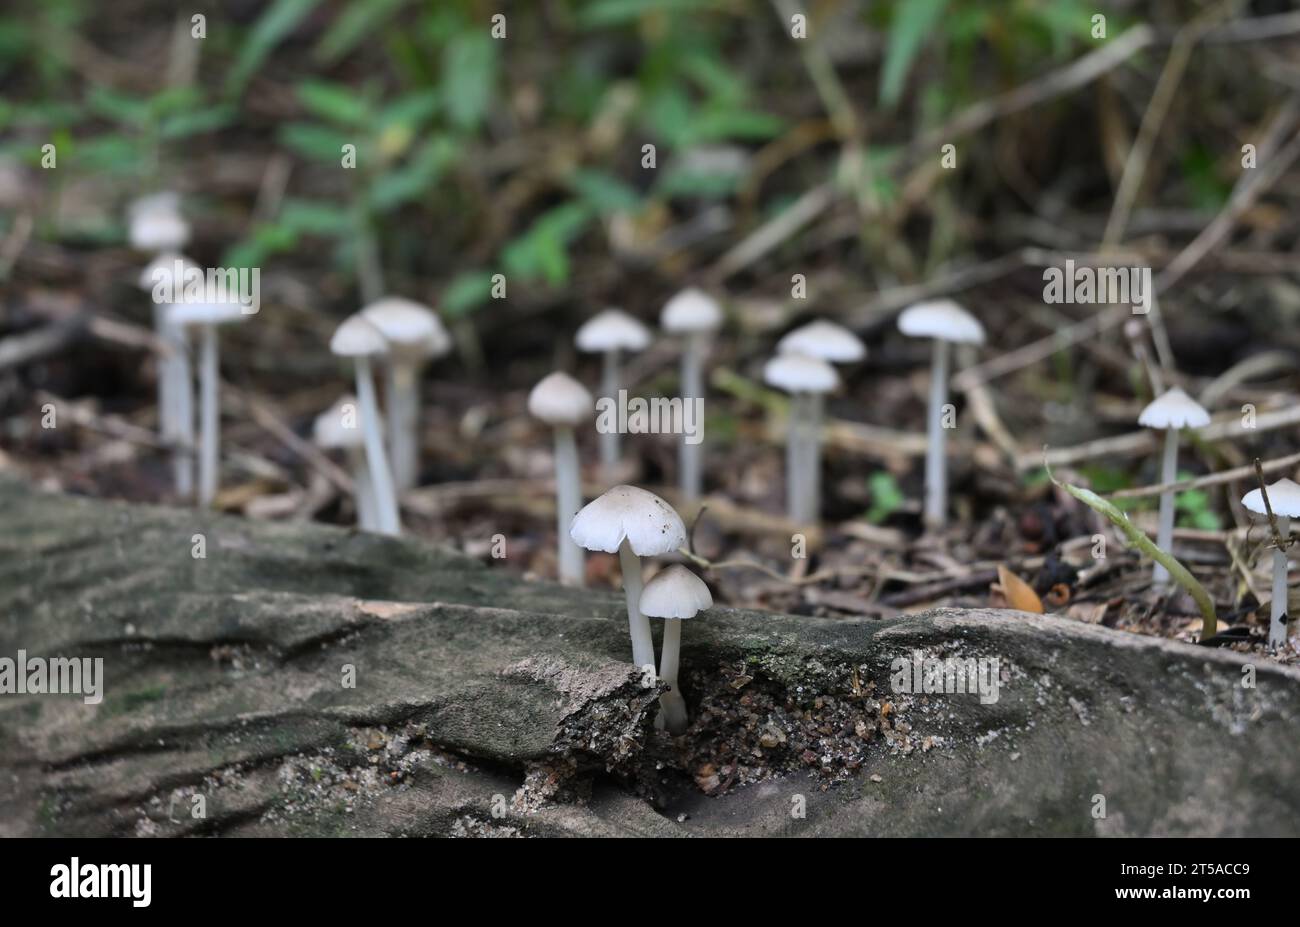 Eine Bodenansicht zeigt Termitomyces Microcarpus Pilze, die auf der Oberfläche eines toten Baumstamms und darüber hinaus im unscharfen Hintergrund blühen Stockfoto